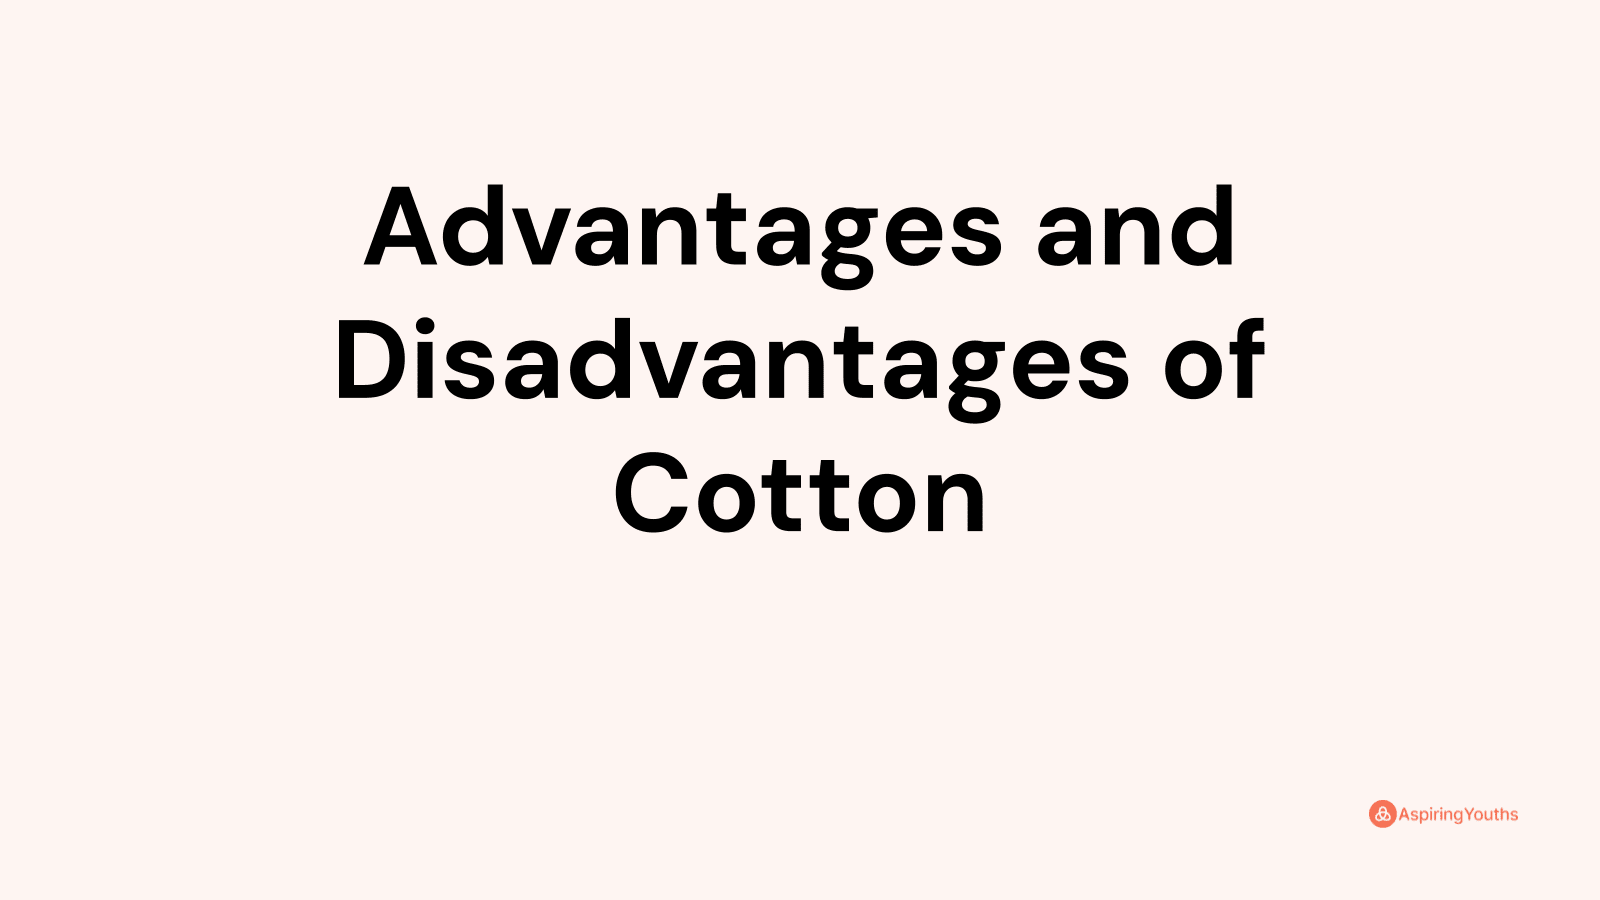 Advantages and disadvantages of Cotton